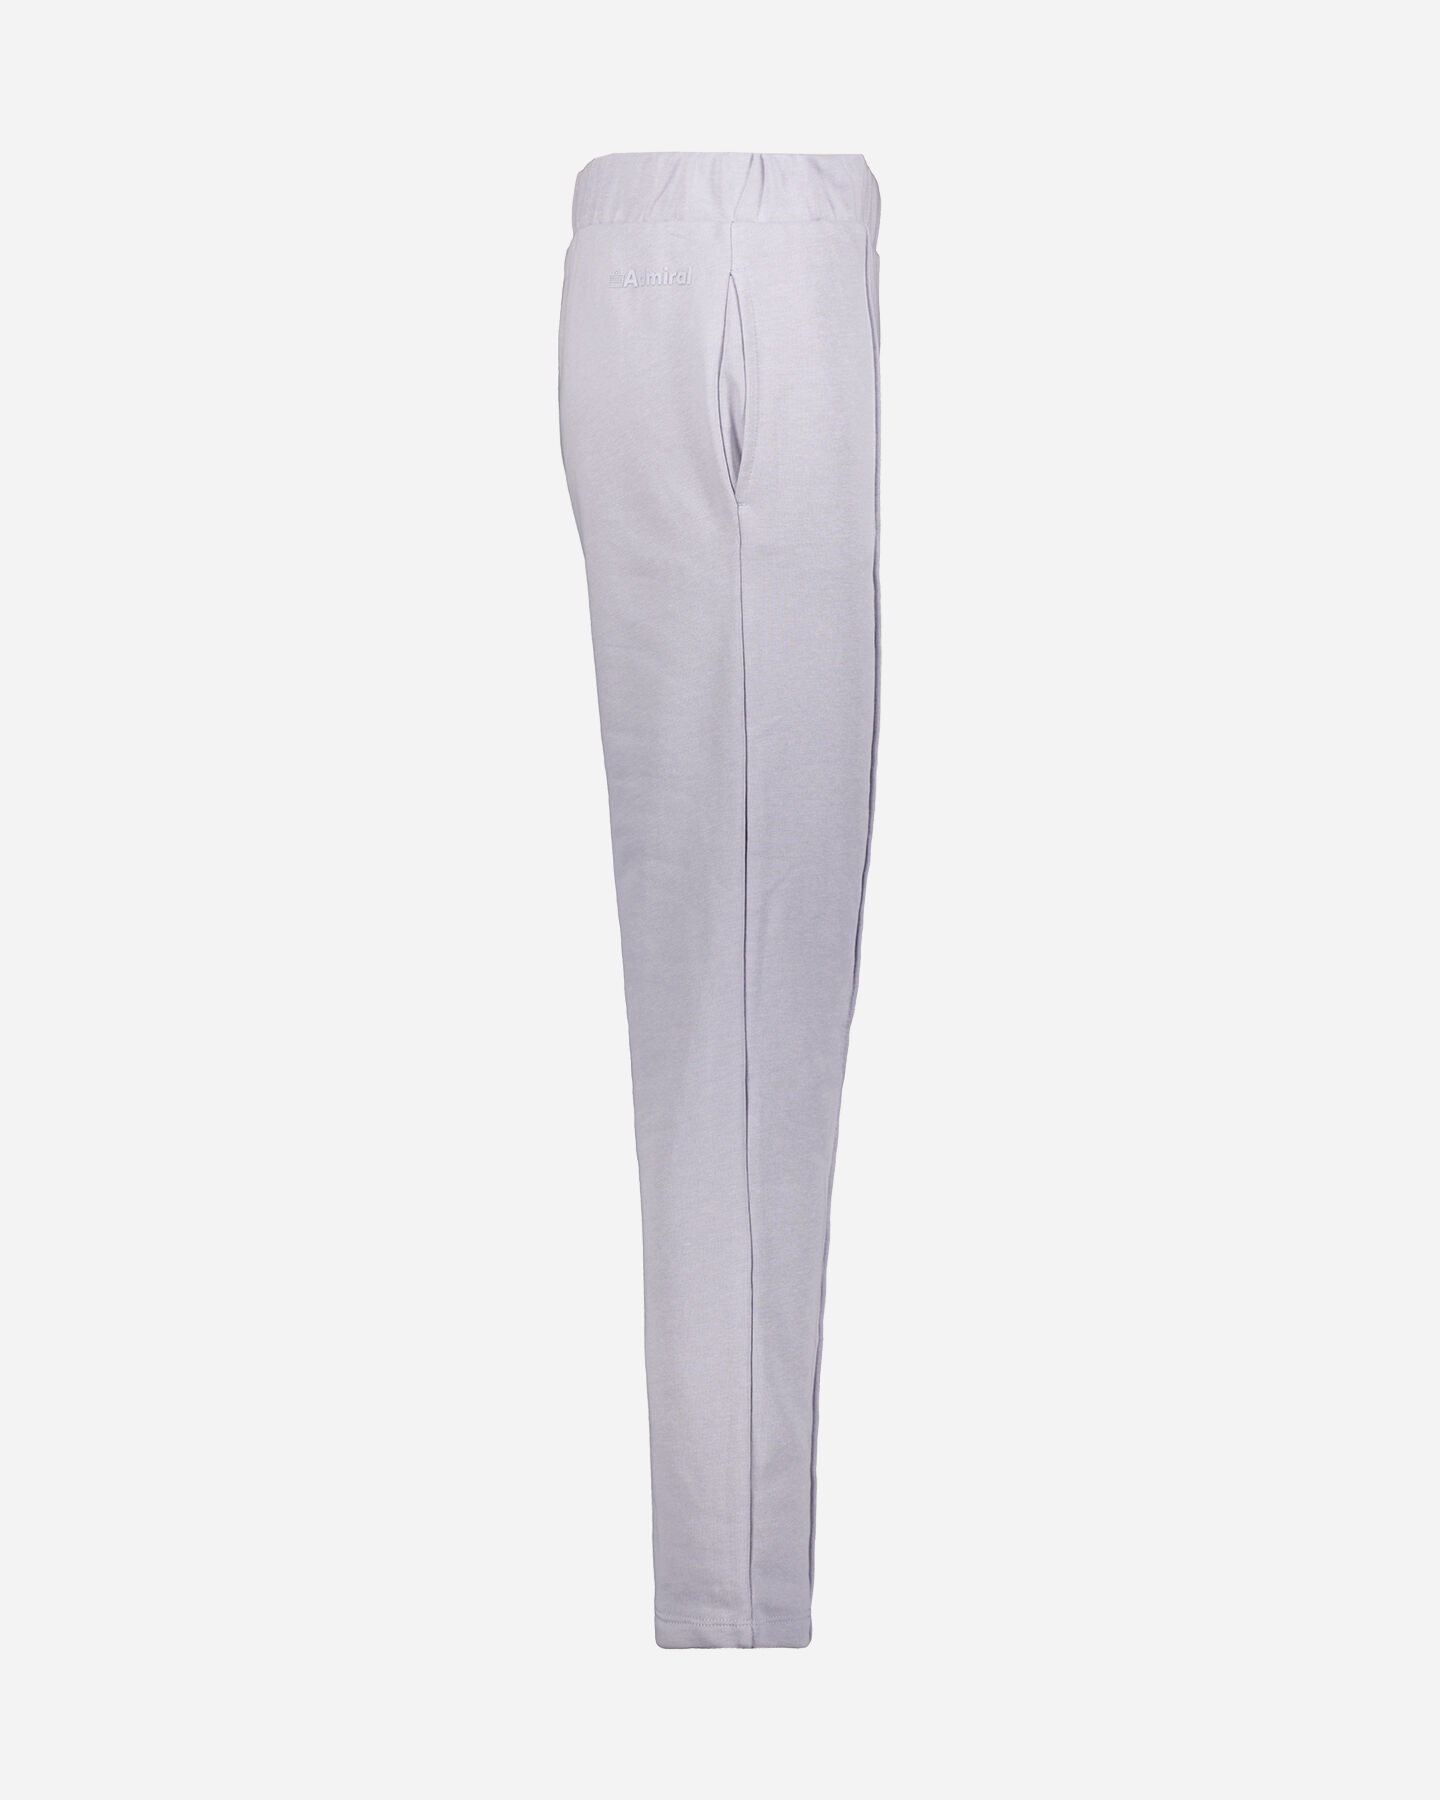  Pantalone ADMIRAL NEW CLASSIC W S4125811|442|S scatto 1